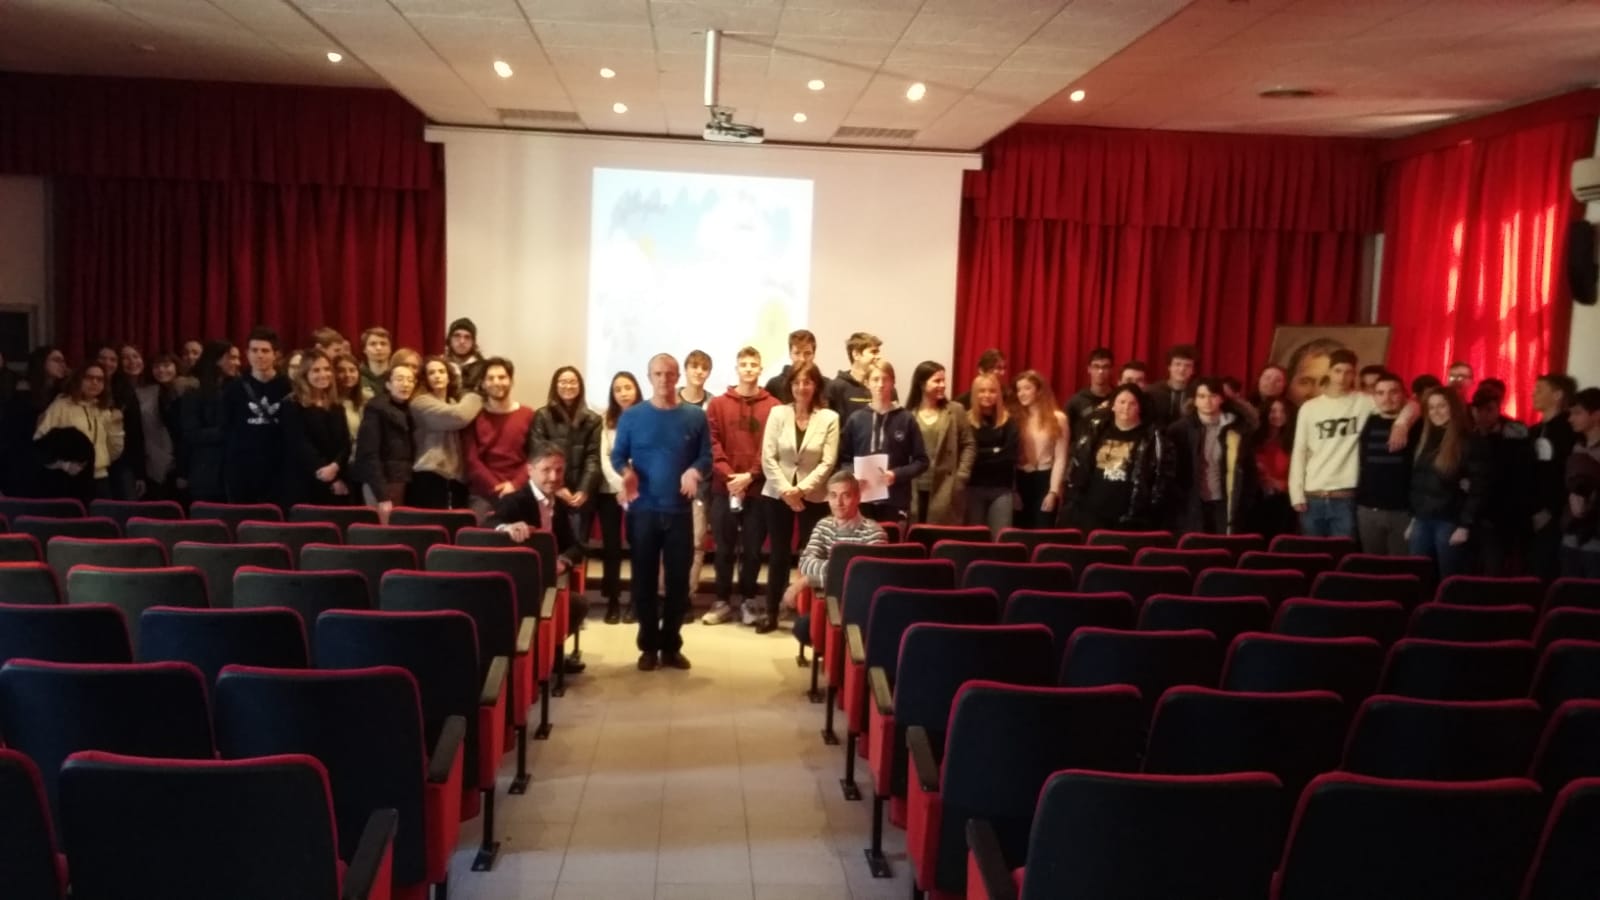 Educazione finanziaria: gli studenti di Alassio a lezione di economia e sostenibilità con Banca Carige e FEduF (ABI)